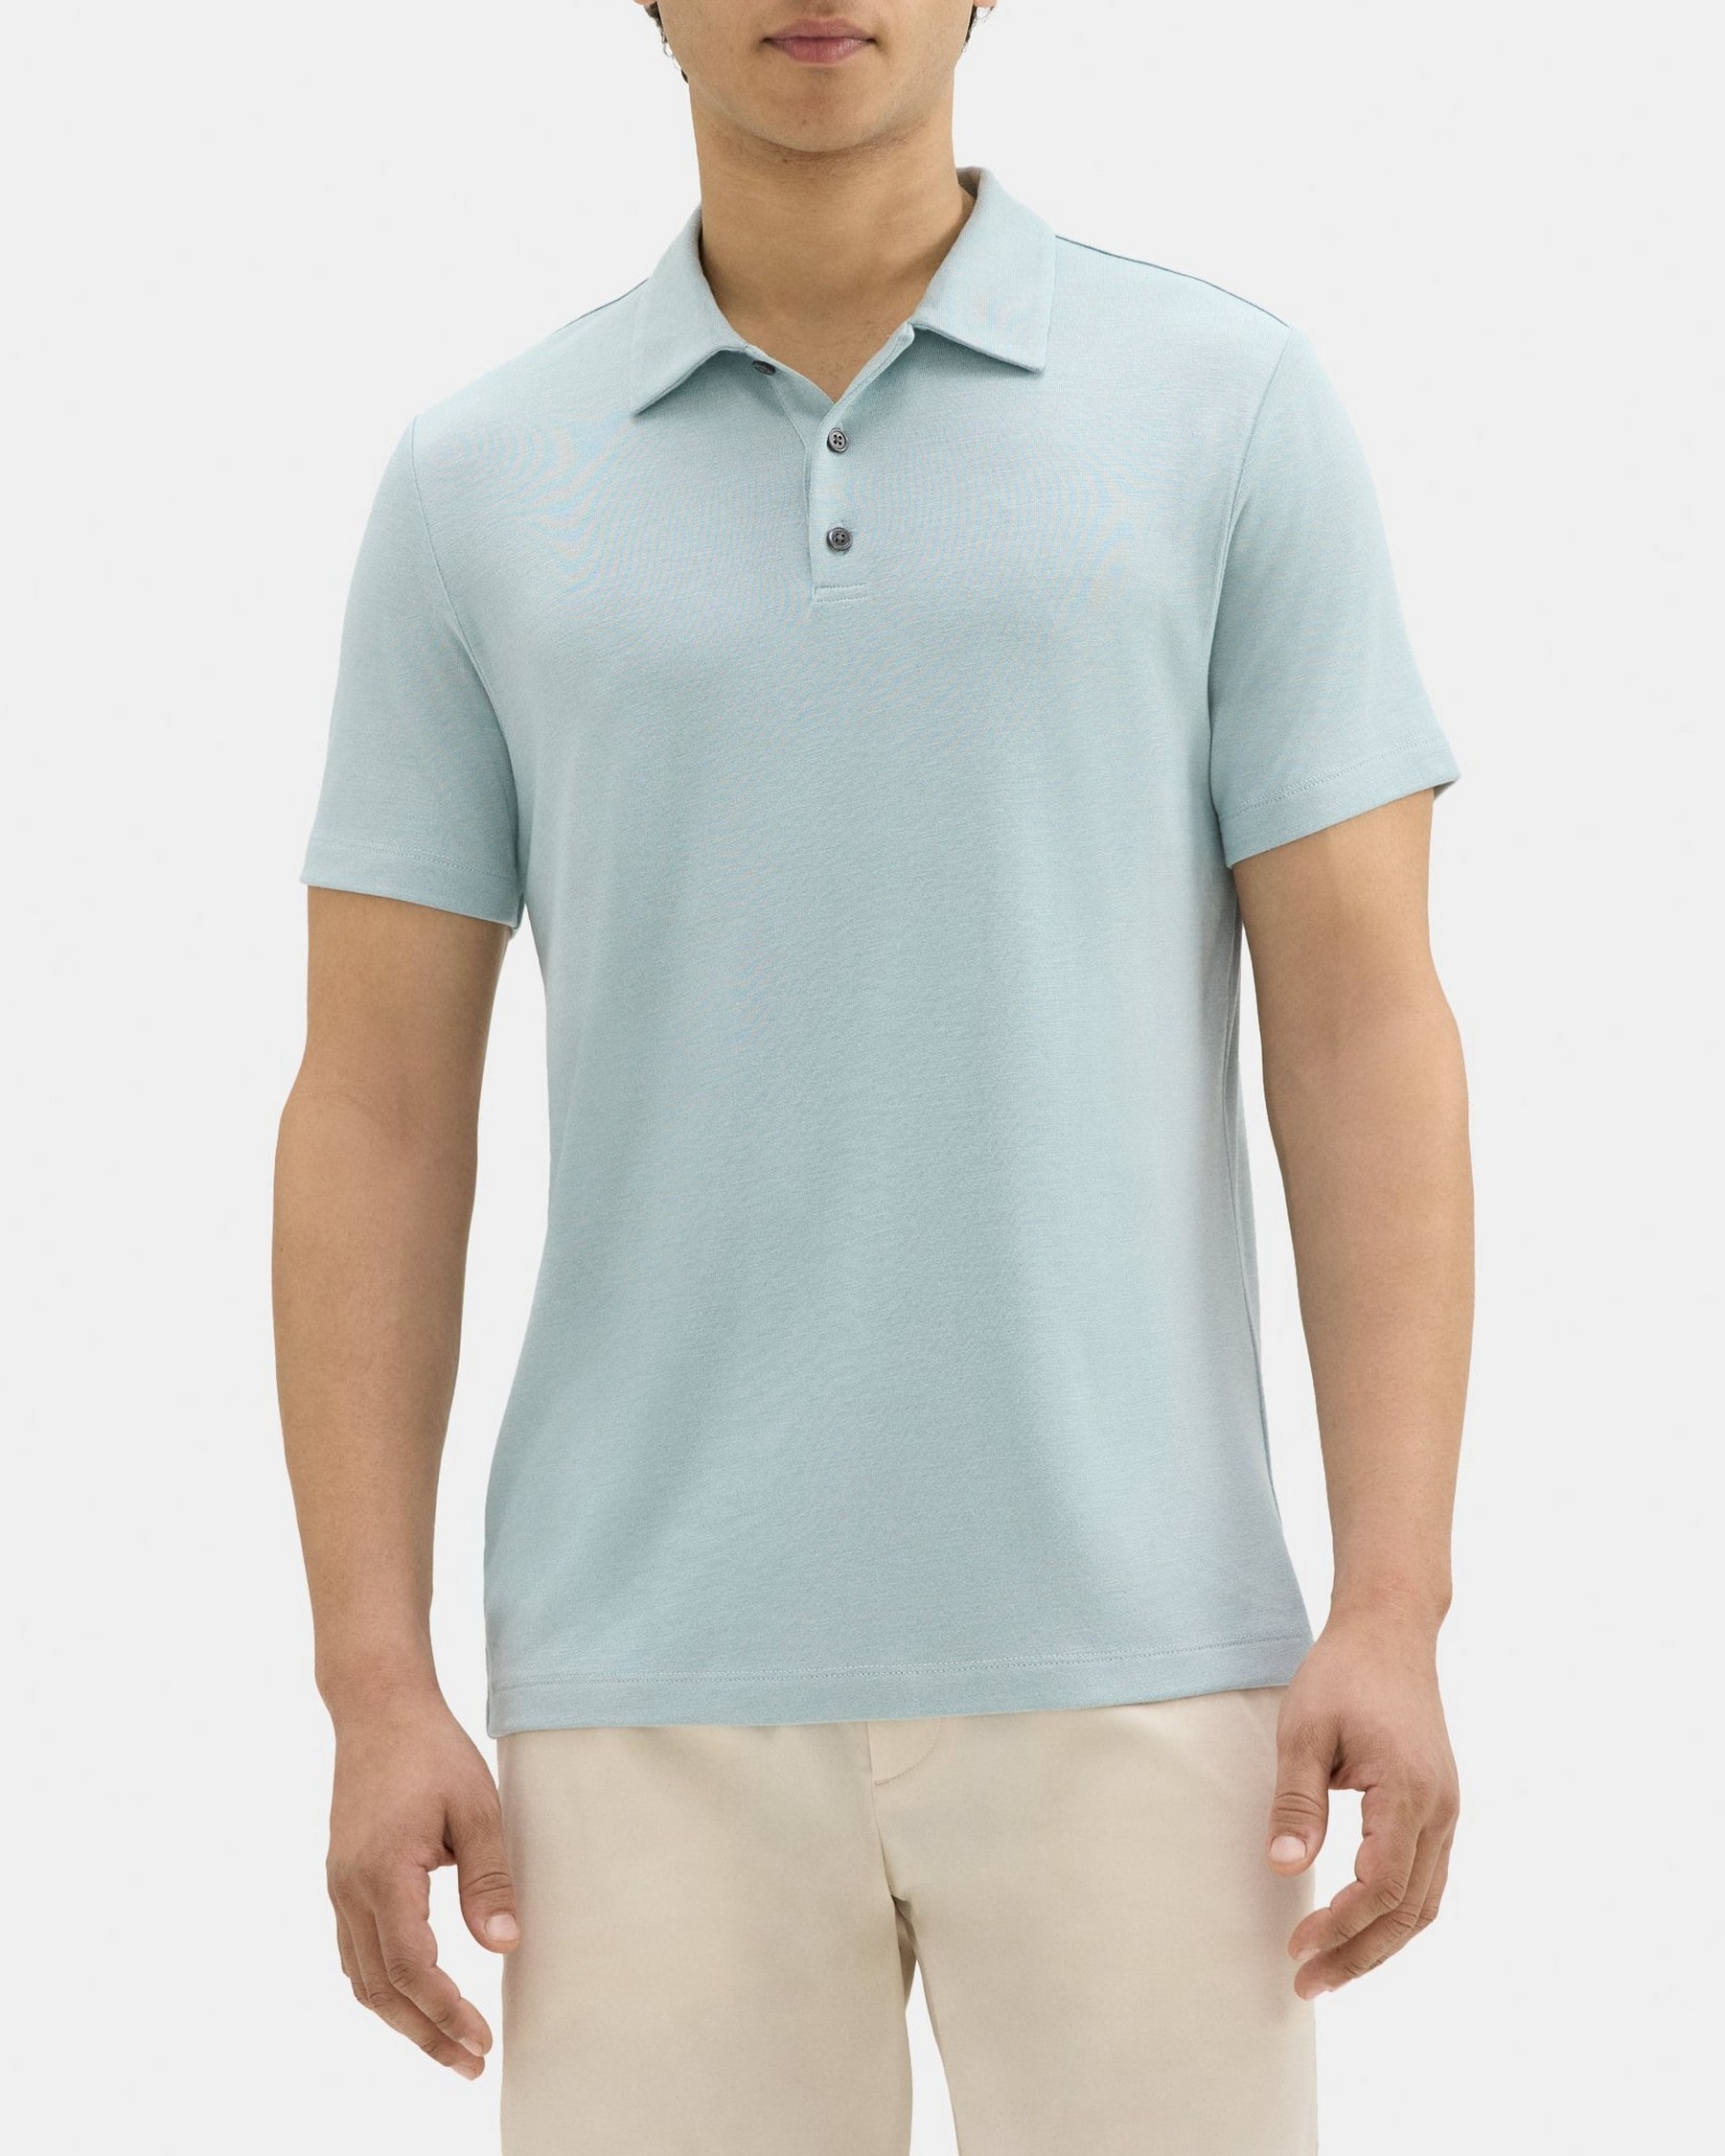 띠어리 Theory Polo Shirt in Modal Blend Jersey,ETHER/VAPOR